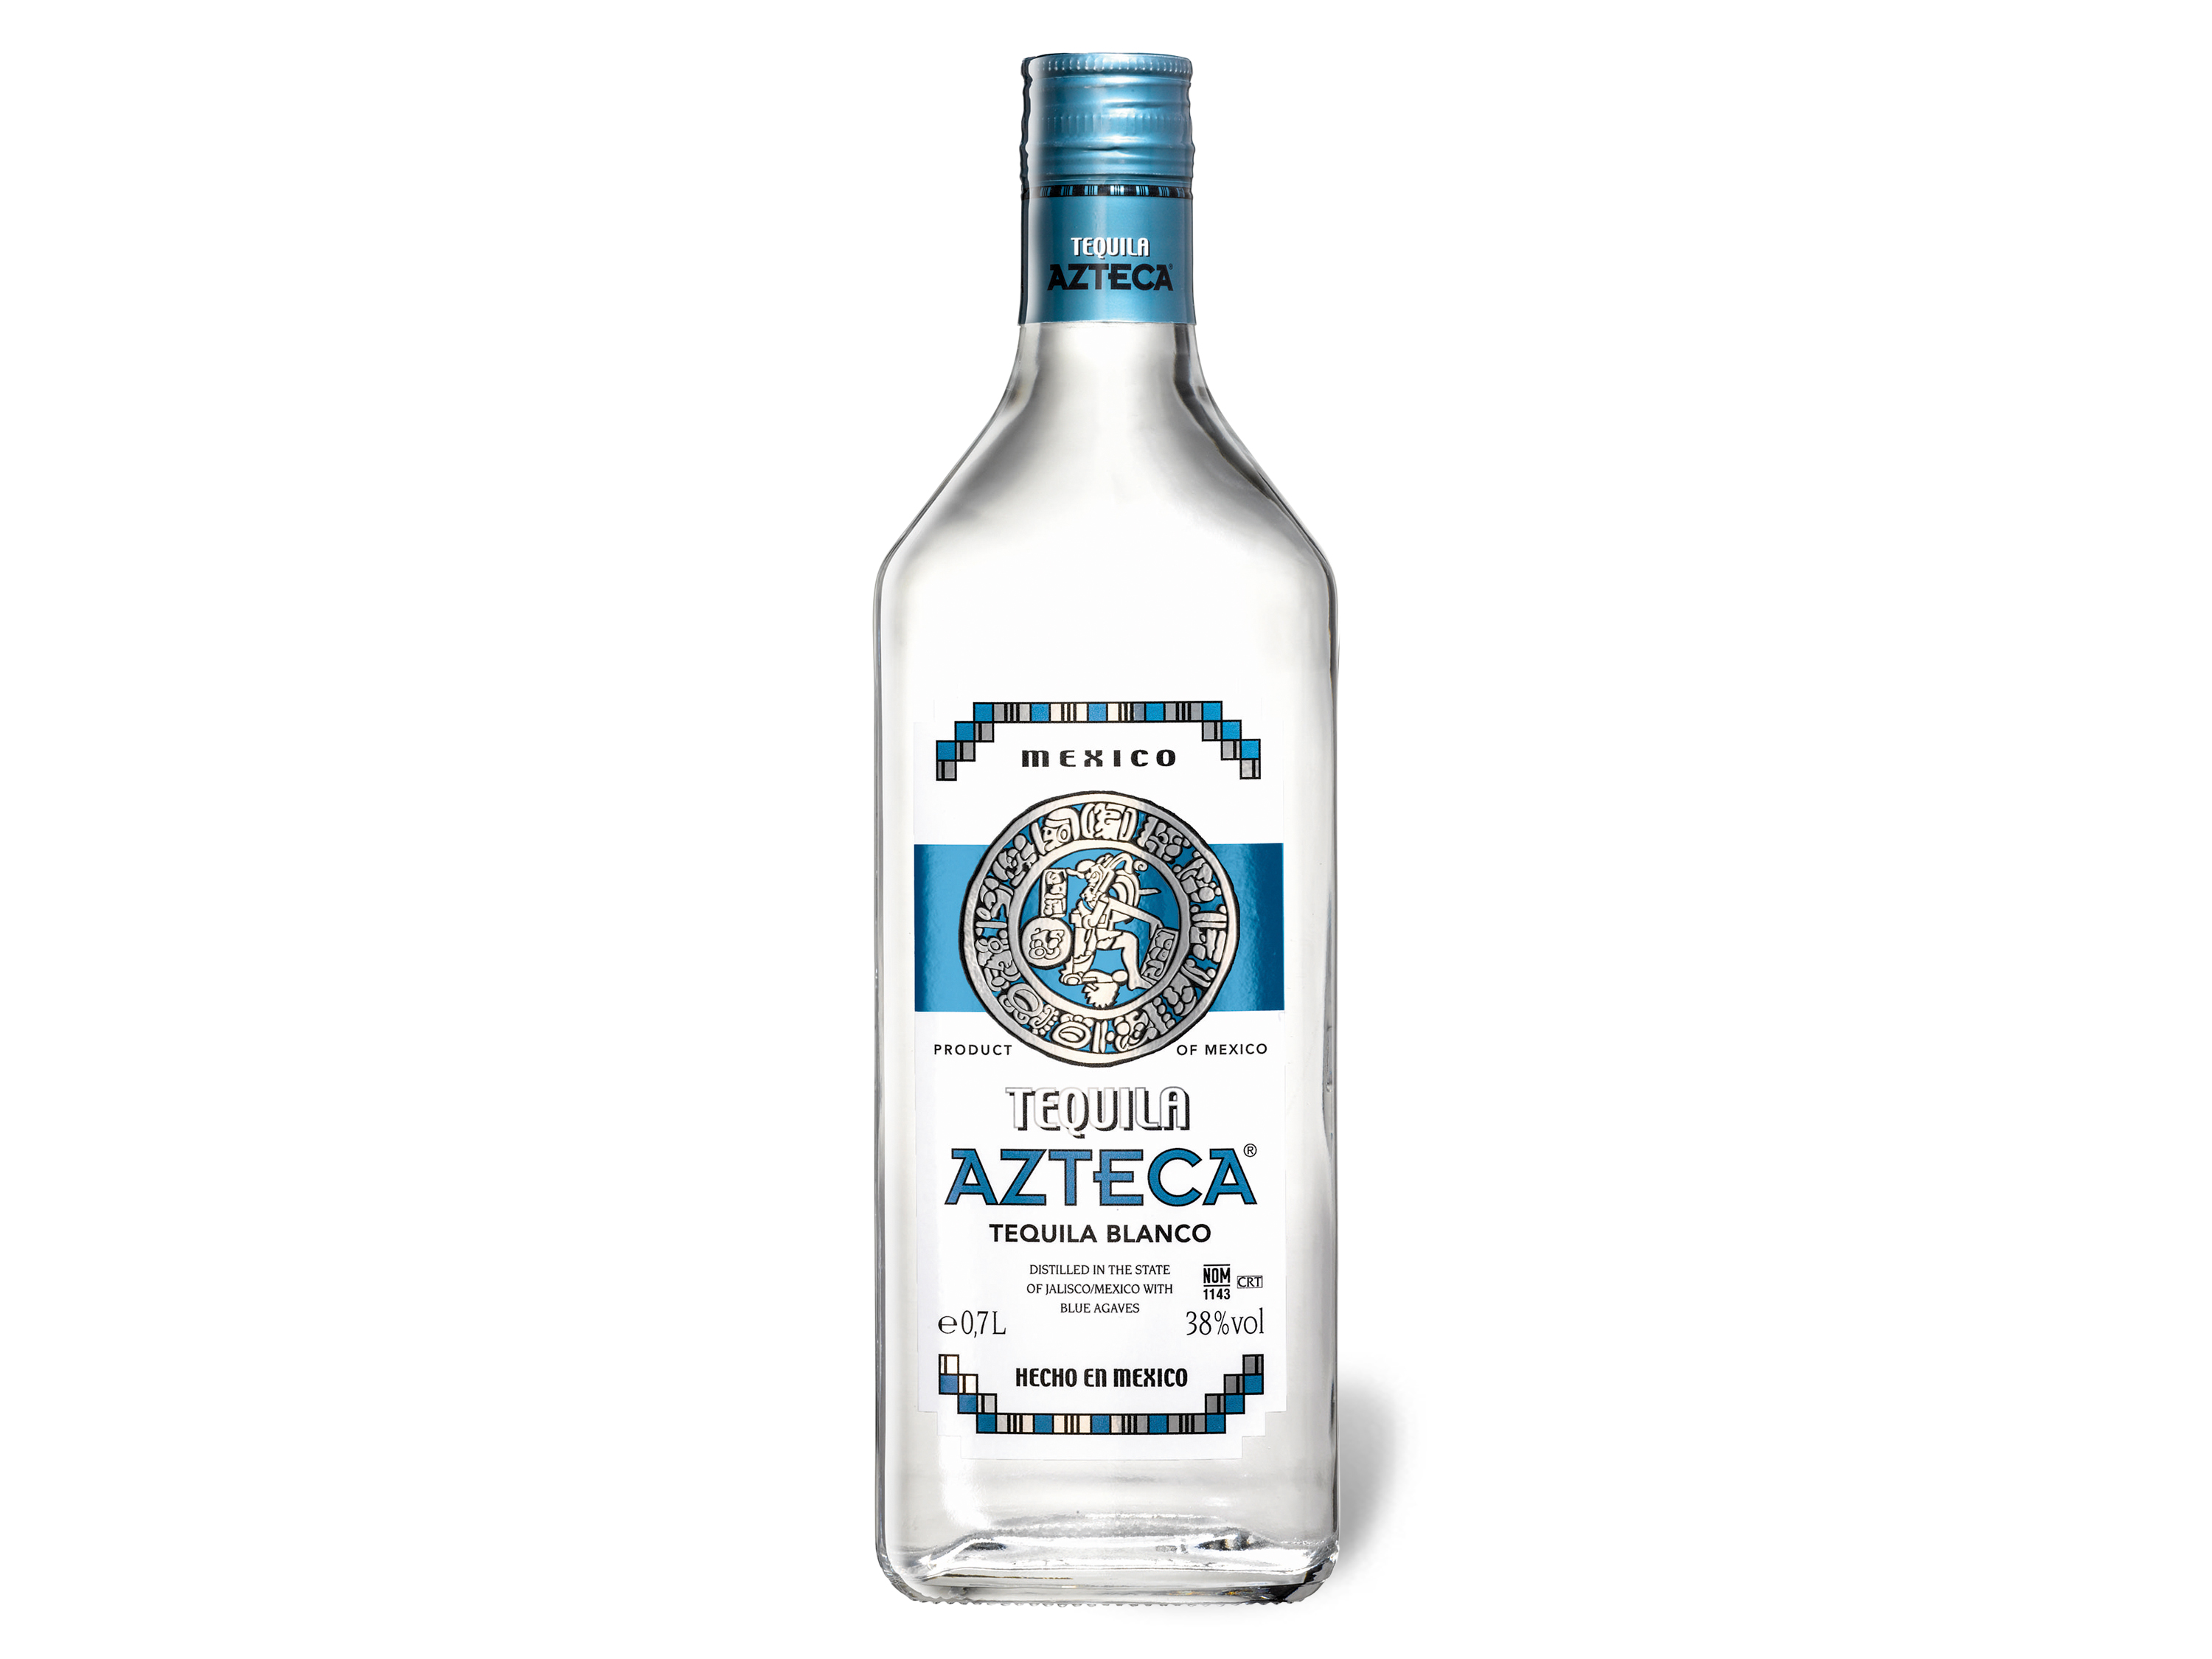 Angebot Lidl Azteca Tequila Blanco 38% Vol Lidl | Champagner & Sekt